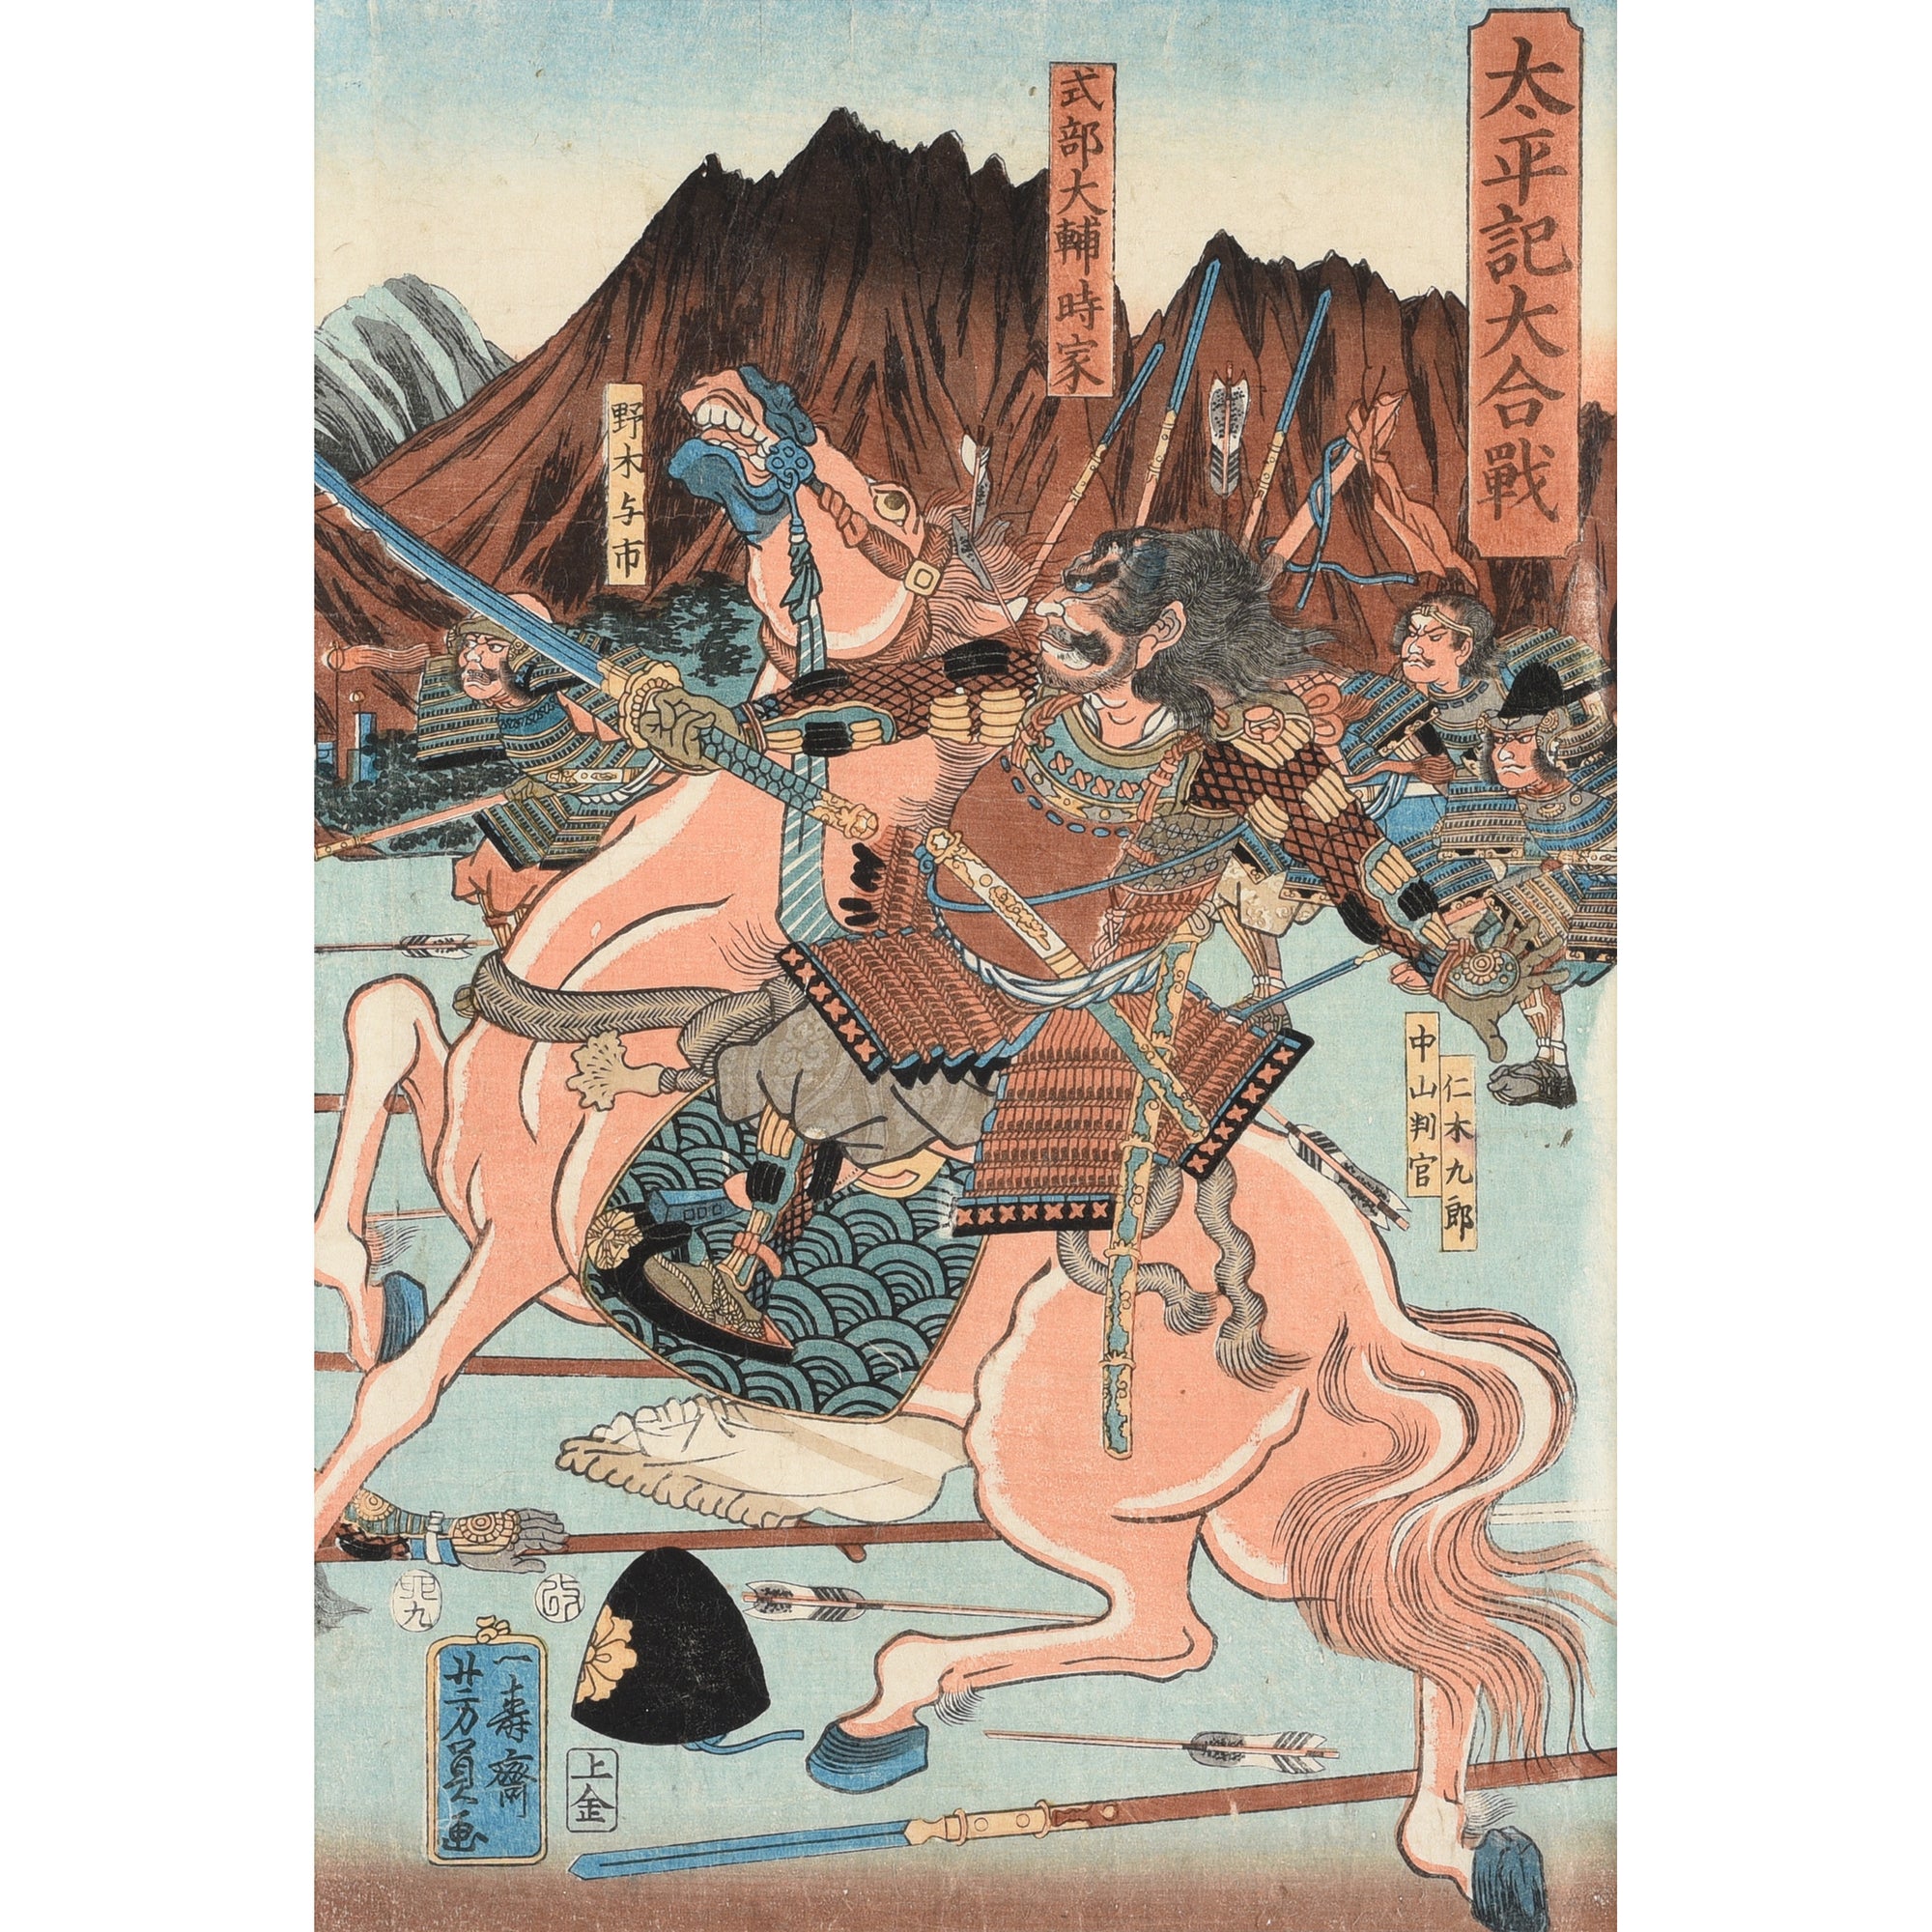 Framed 'Great Battle of the Taiheiki' Japanese woodblock by Utagawa Yoshikazu - 19thC